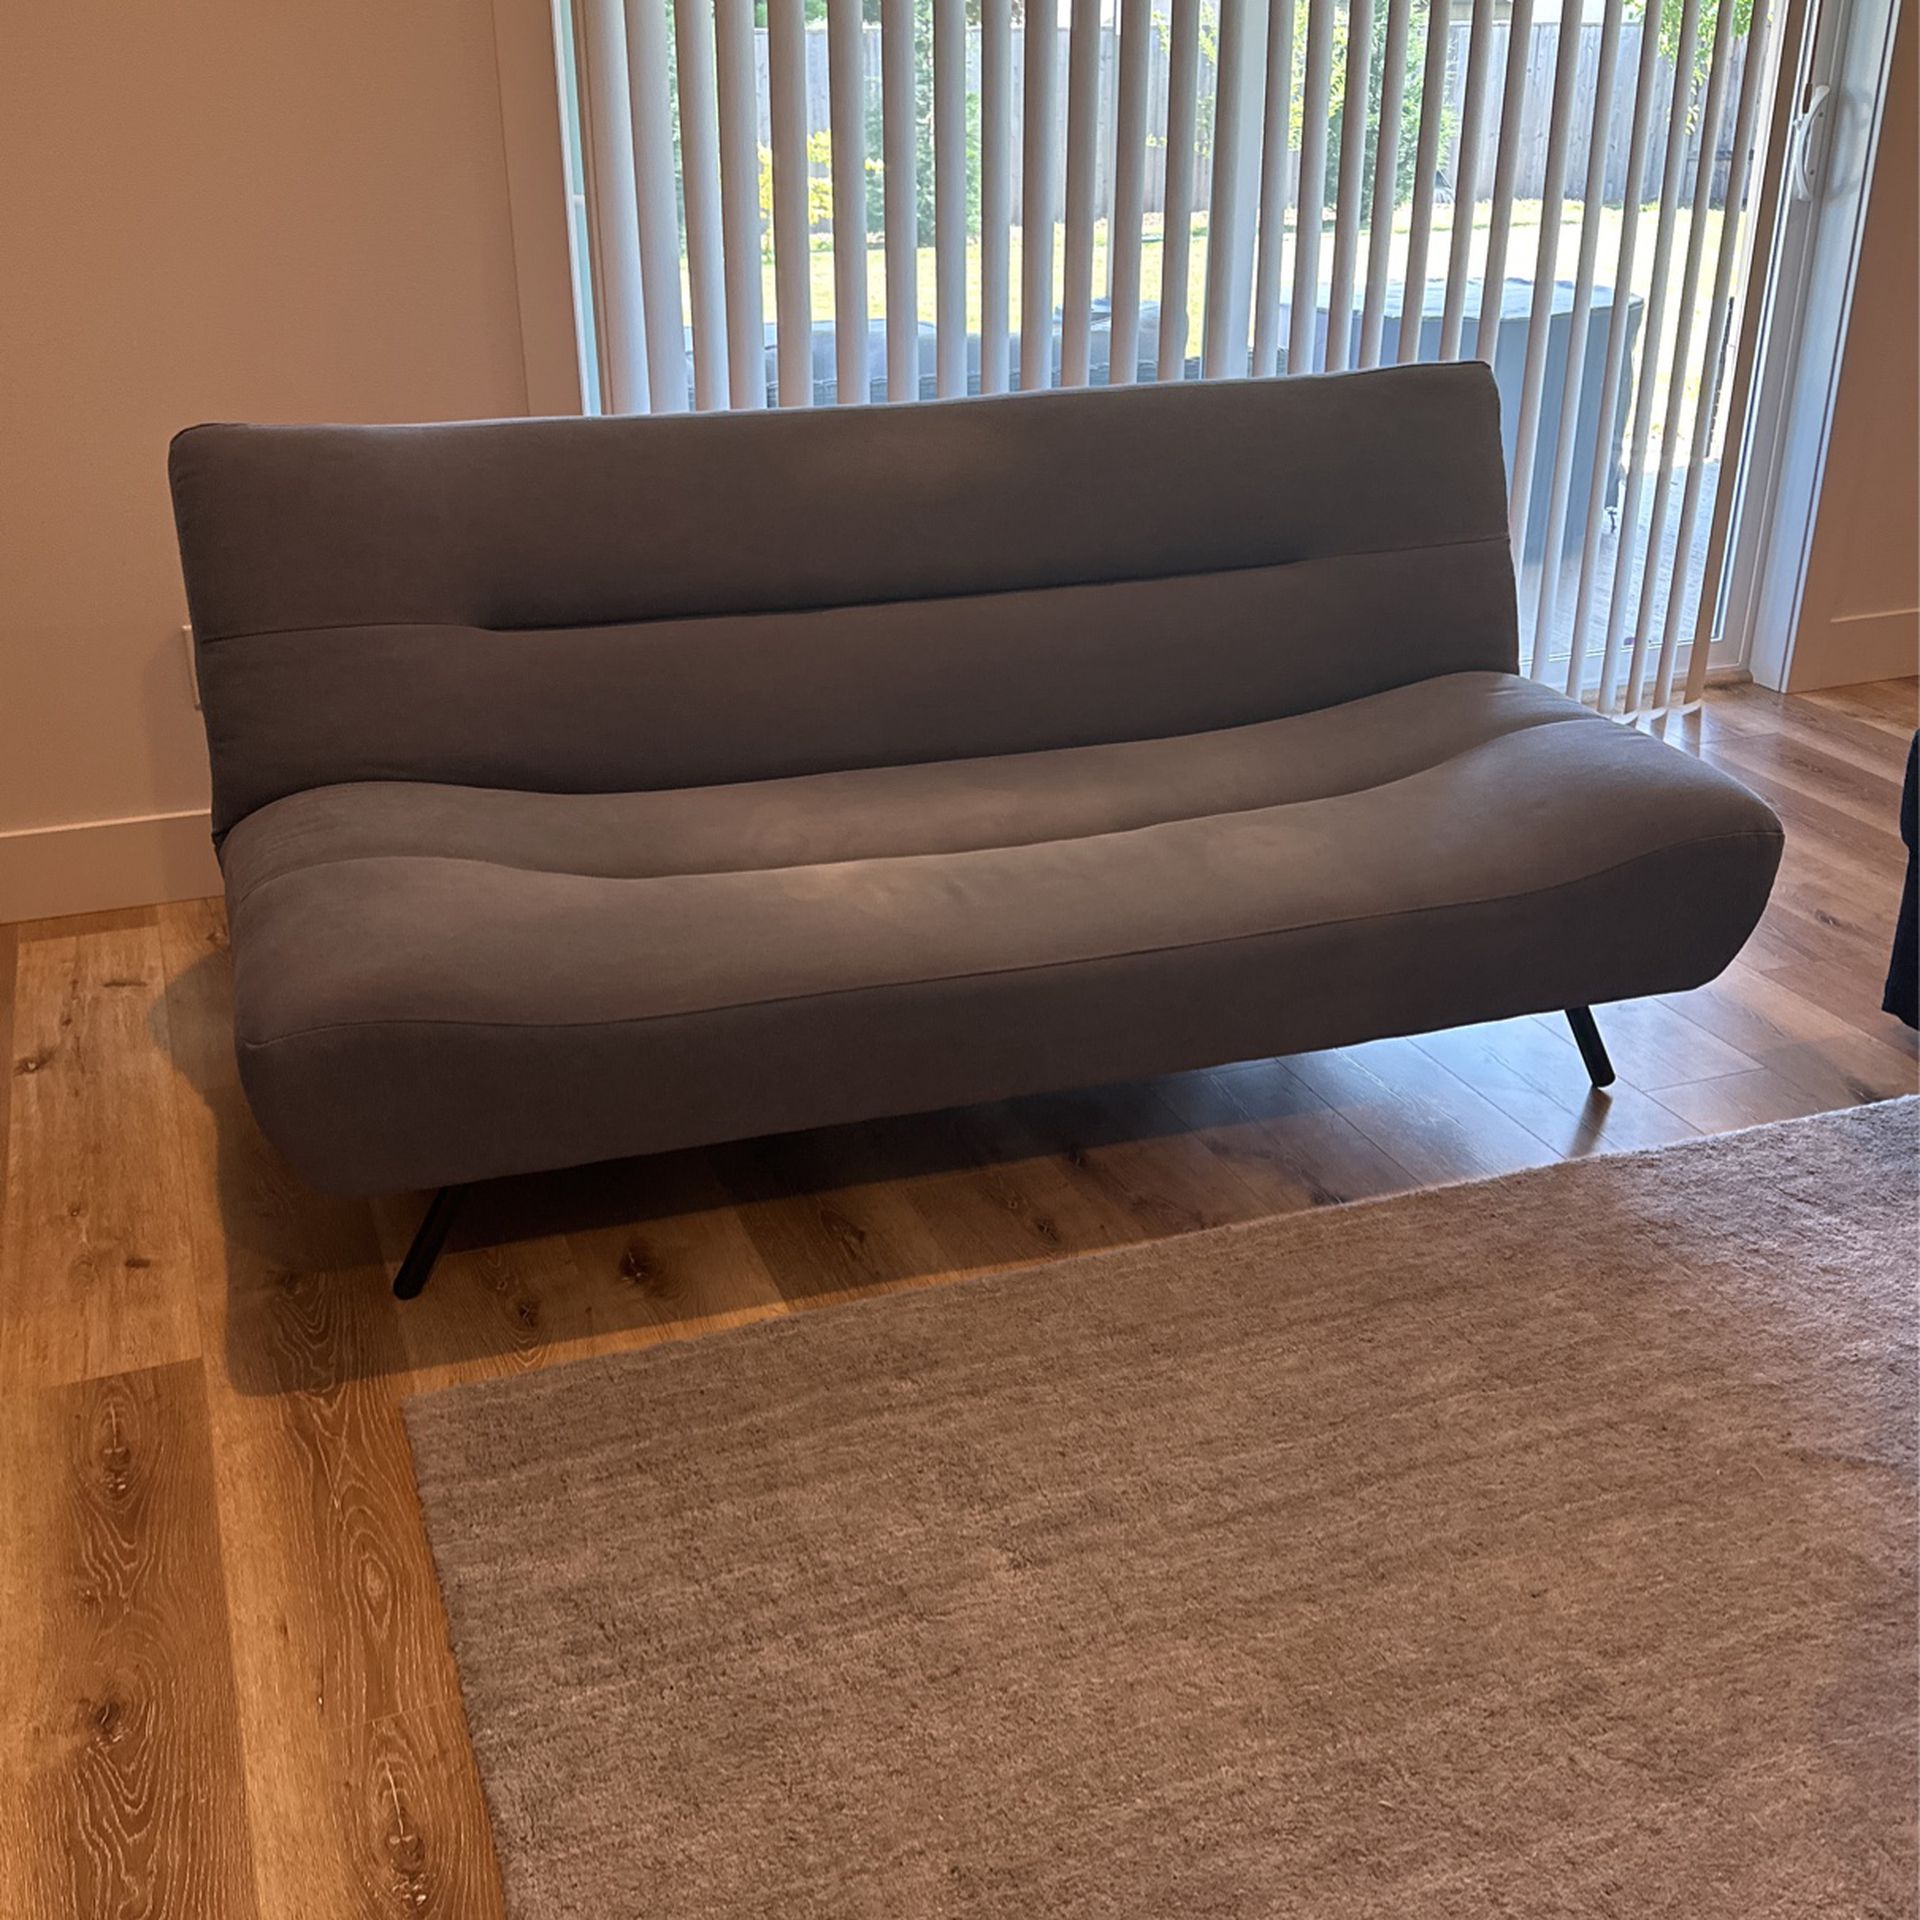 Barn Finn Futon Sofa for Sale WA OfferUp